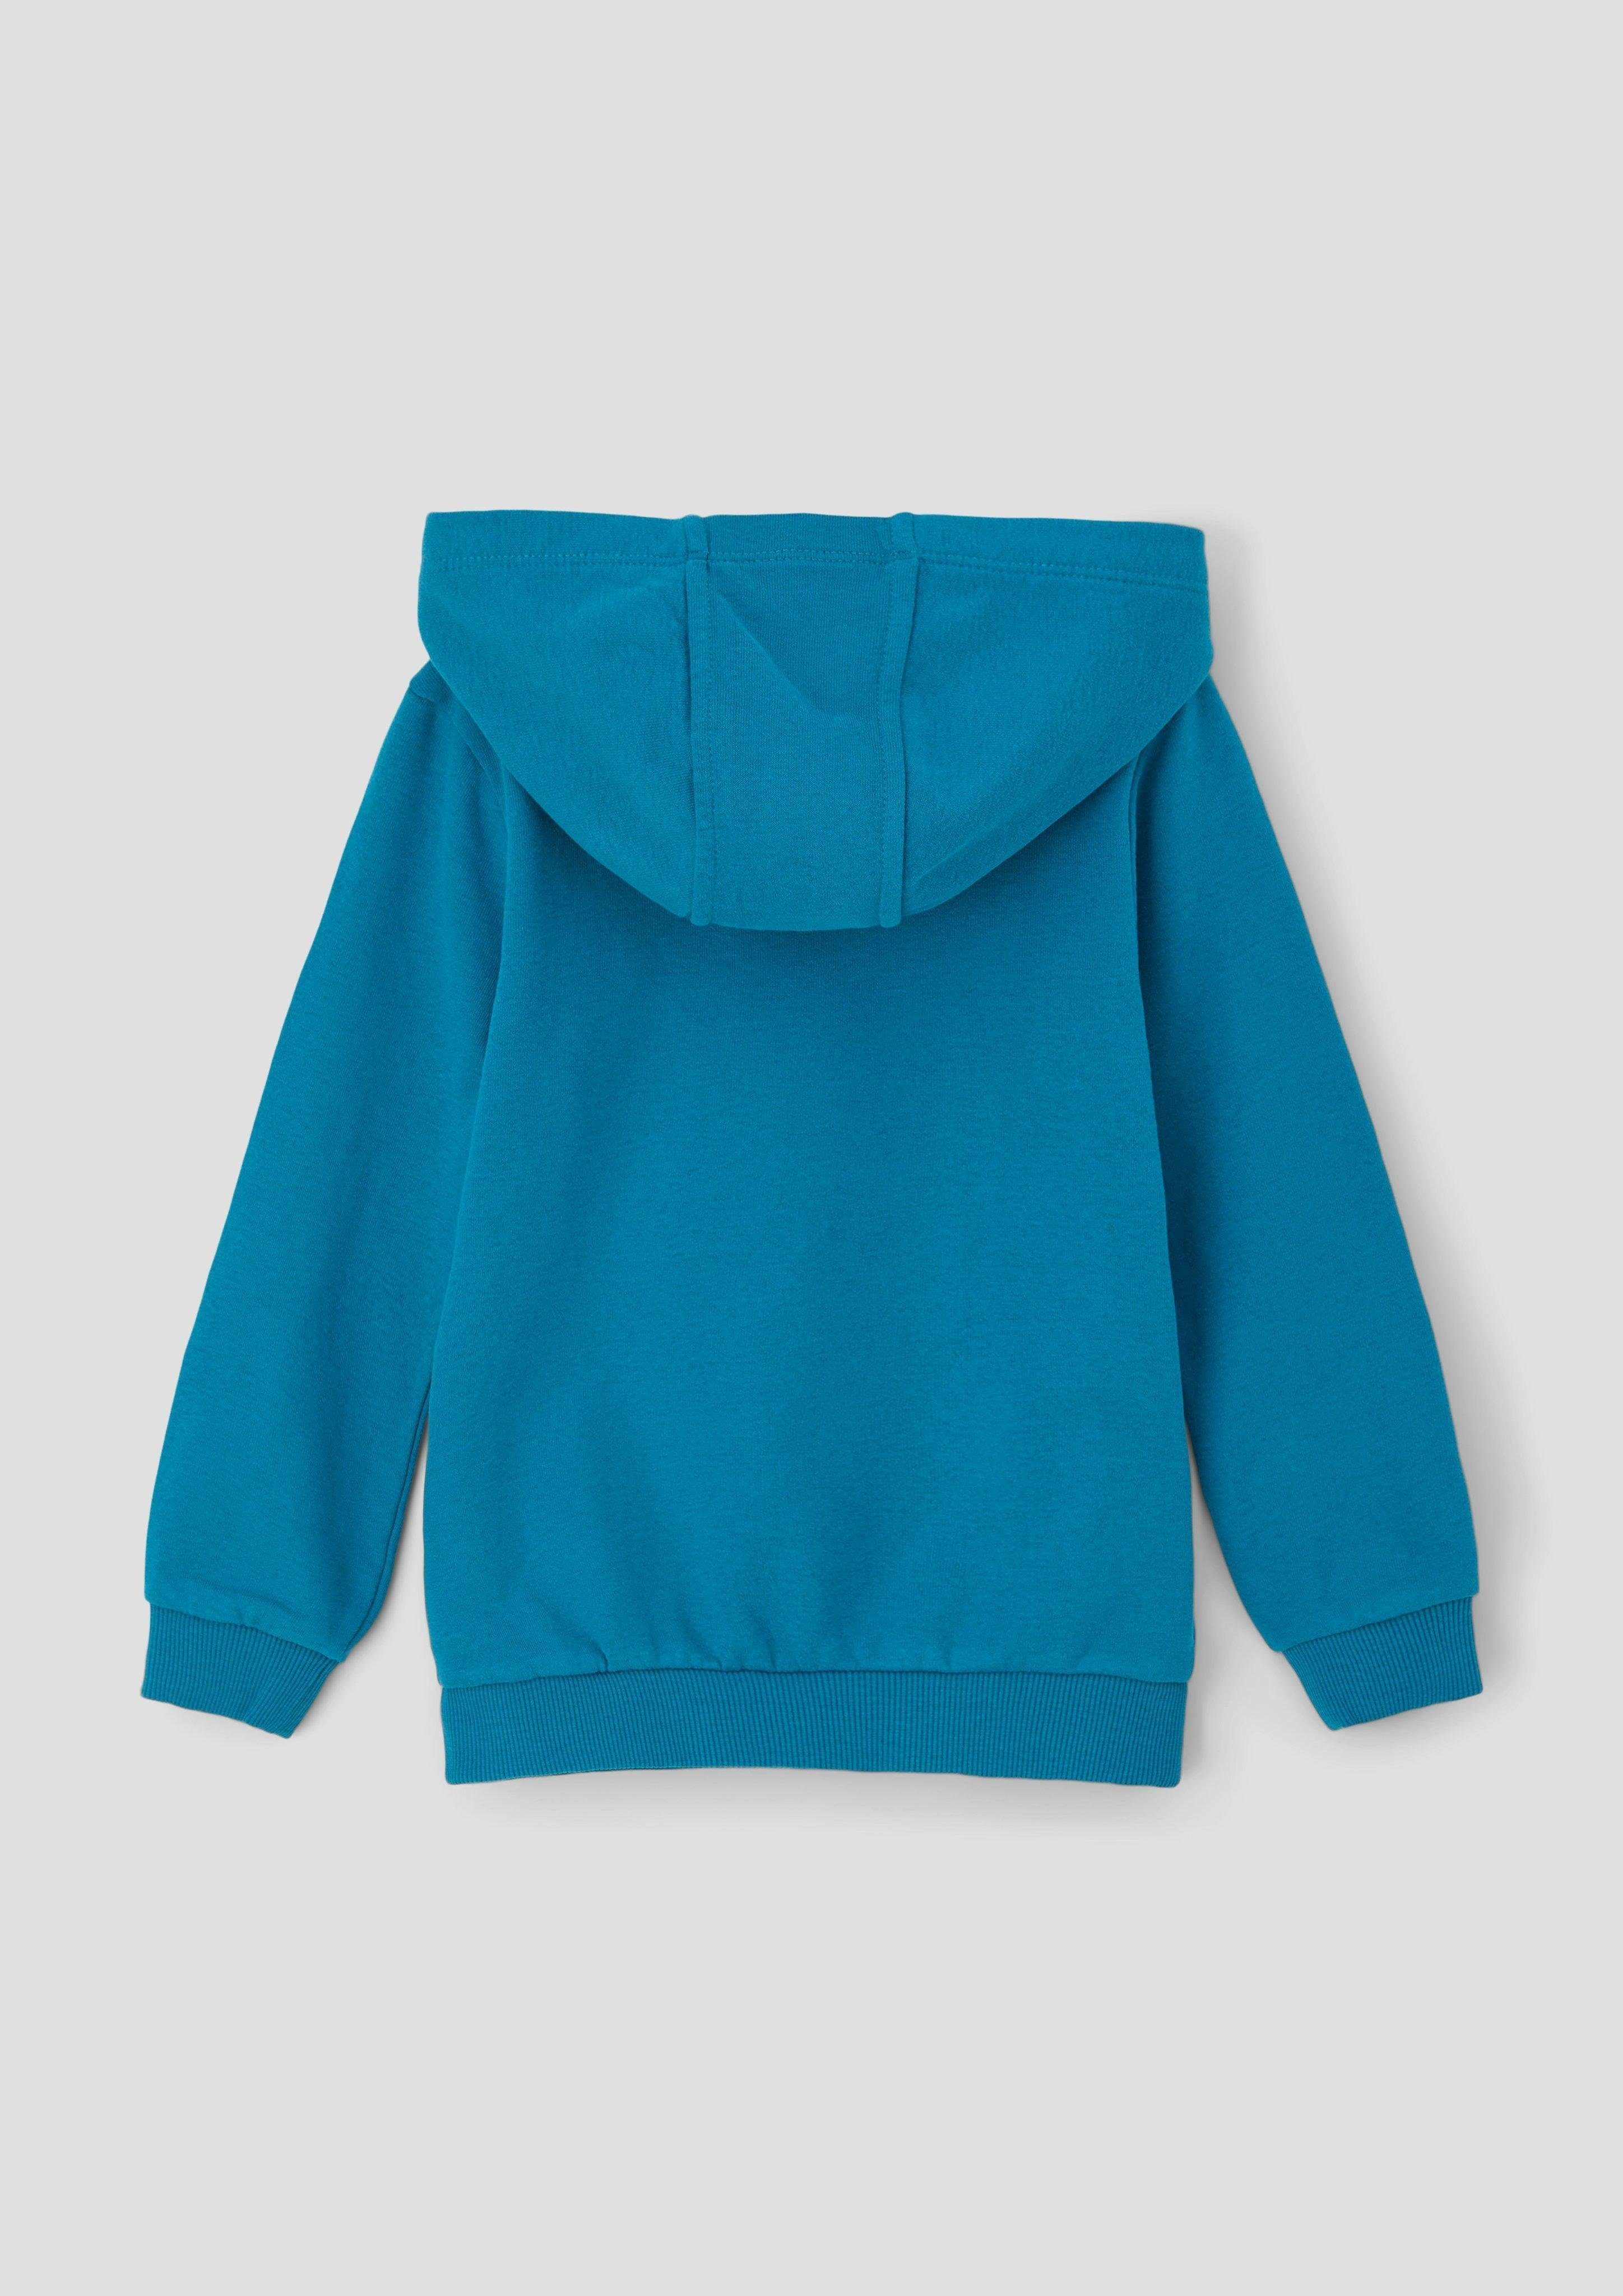 s.Oliver Sweatshirt Kapuzensweater mit Innenseite weicher azurblau